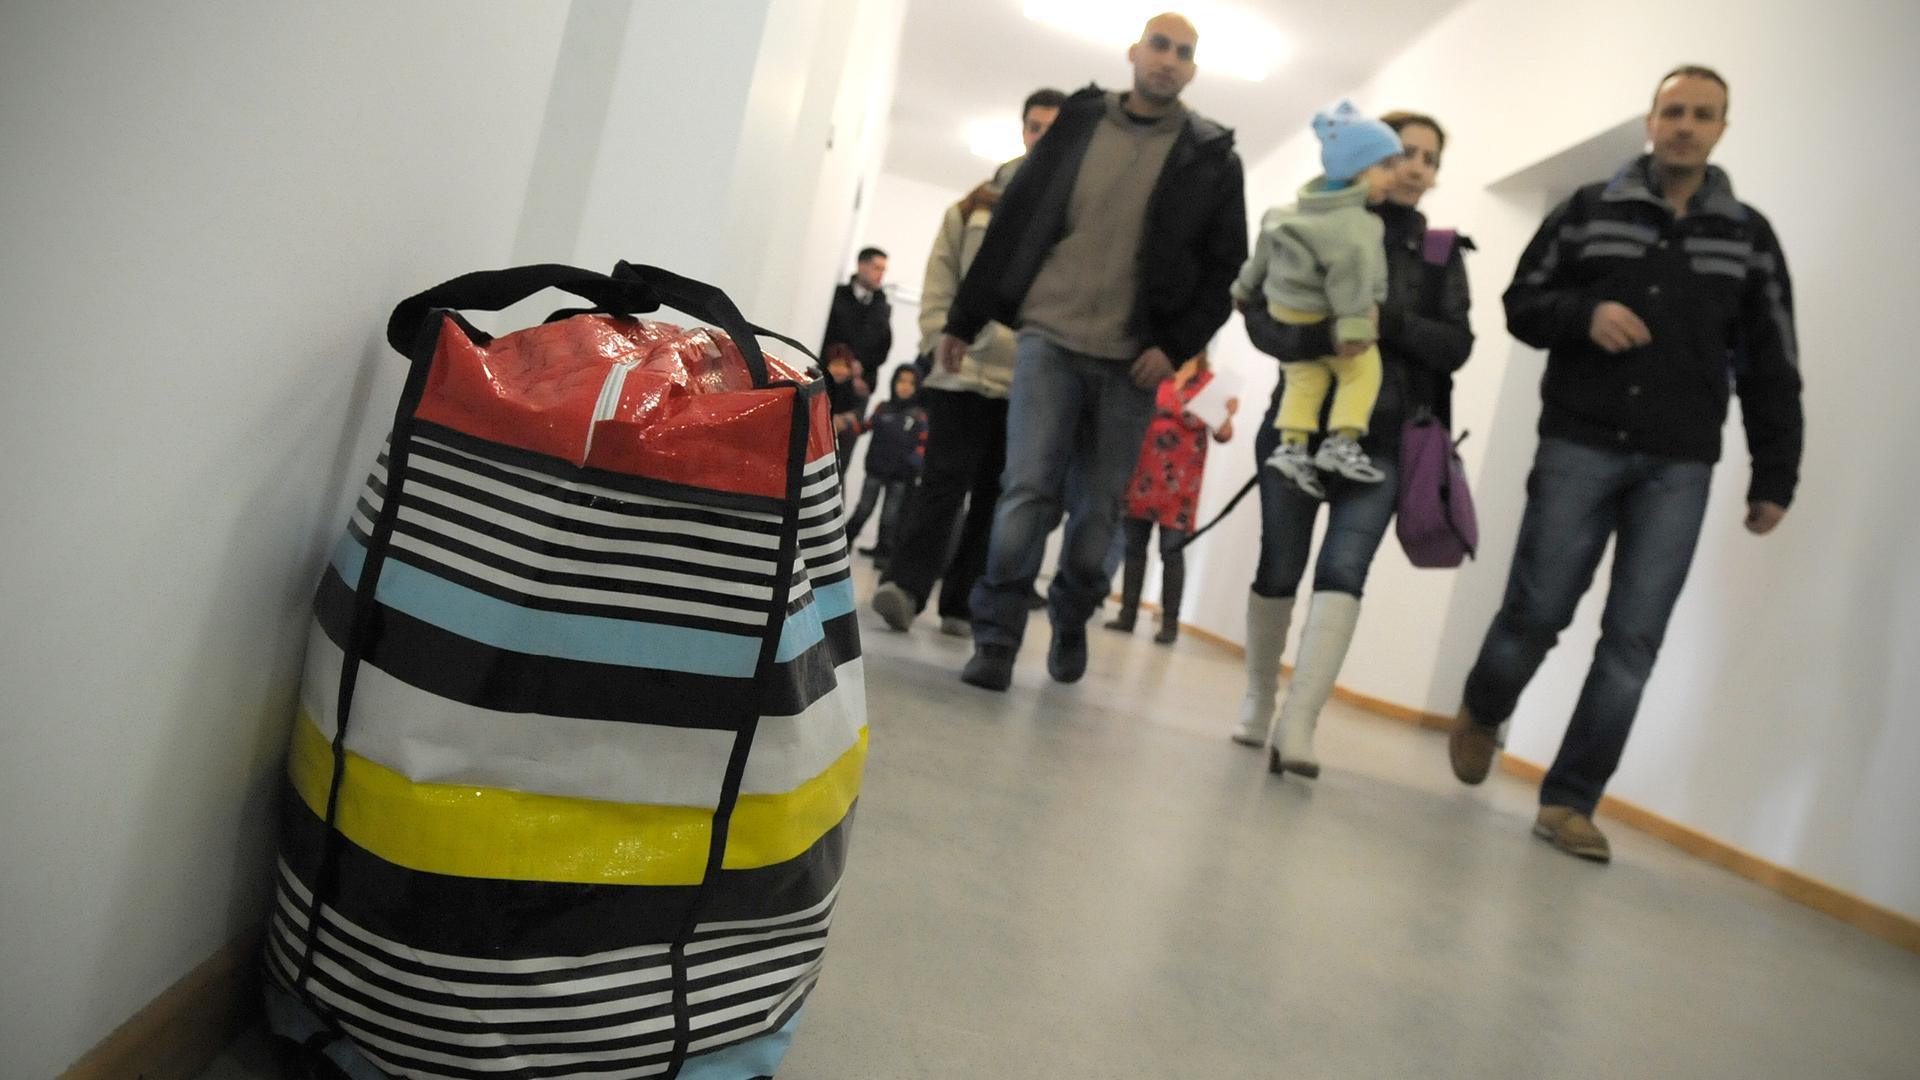 ARCHIV - Flüchtlinge beziehen die Oderland Kaserne, aufgenommen am 18.12.2013 in Frankfurt/Oder (Brandenburg). Foto: Oliver Mehlis/dpa (zu dpa «Brandenburg: Zahl der Asylbewerber hat sich seit 2012 verdoppelt» vom 18.09.2014) +++(c) dpa - Bildfunk+++